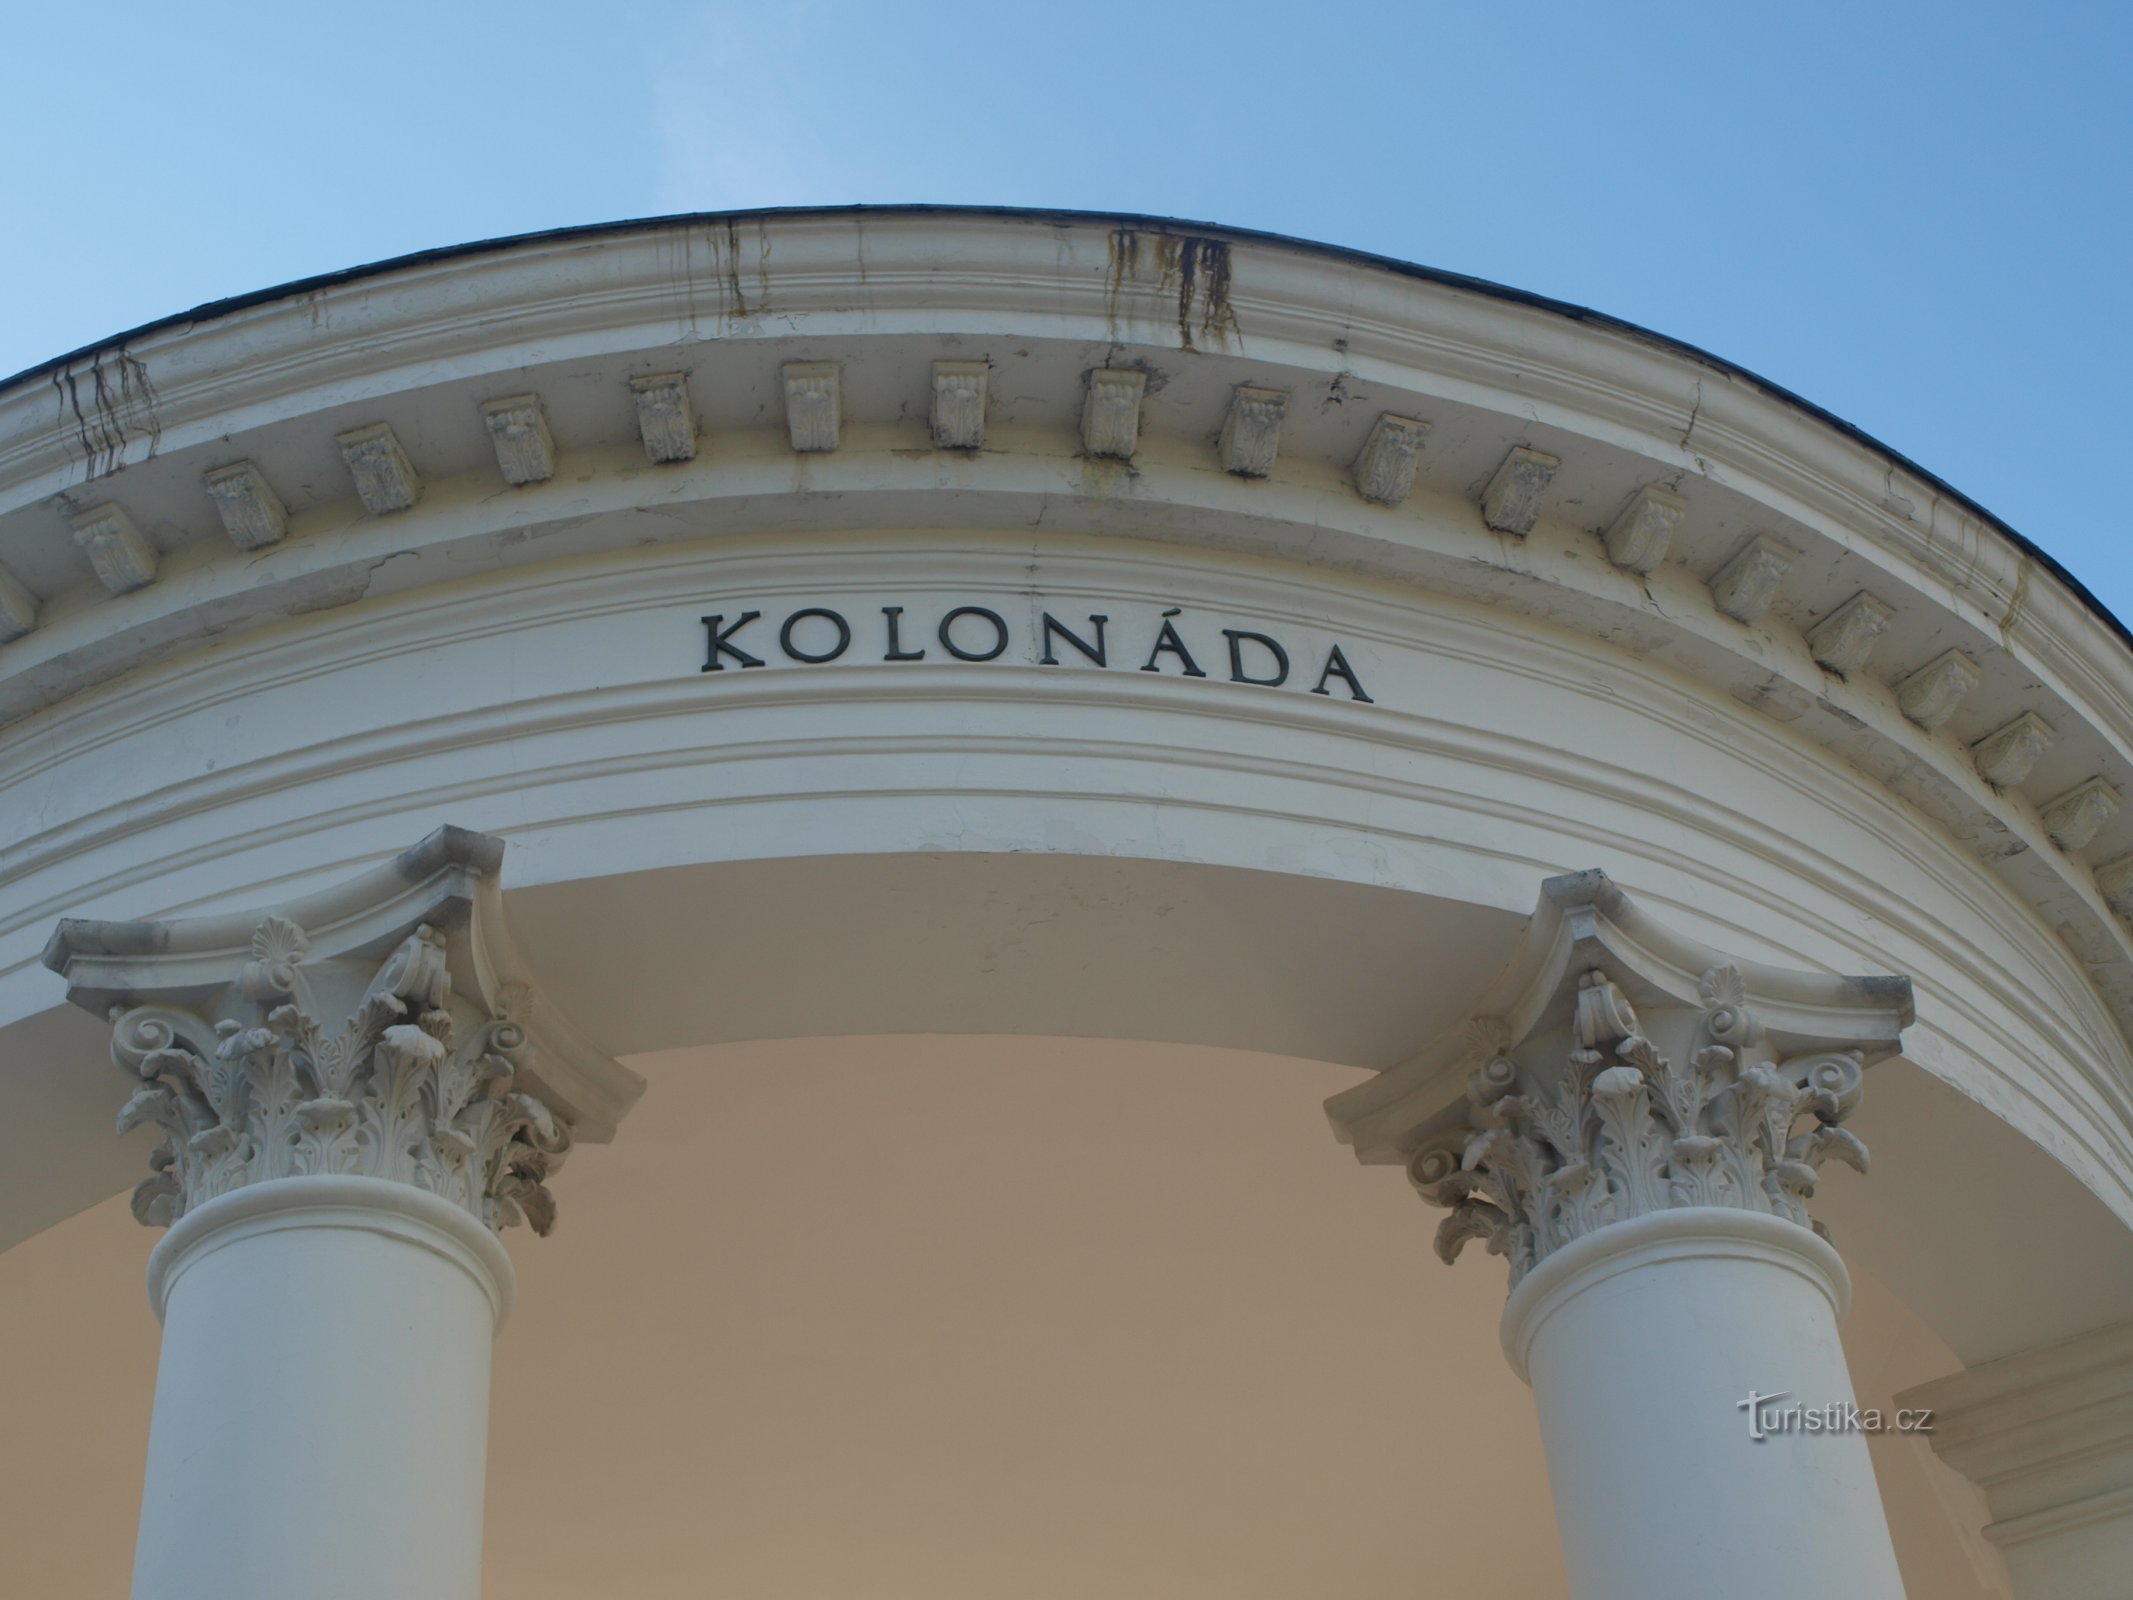 Colonnade in Mariánské Lázně and the Singing Fountain